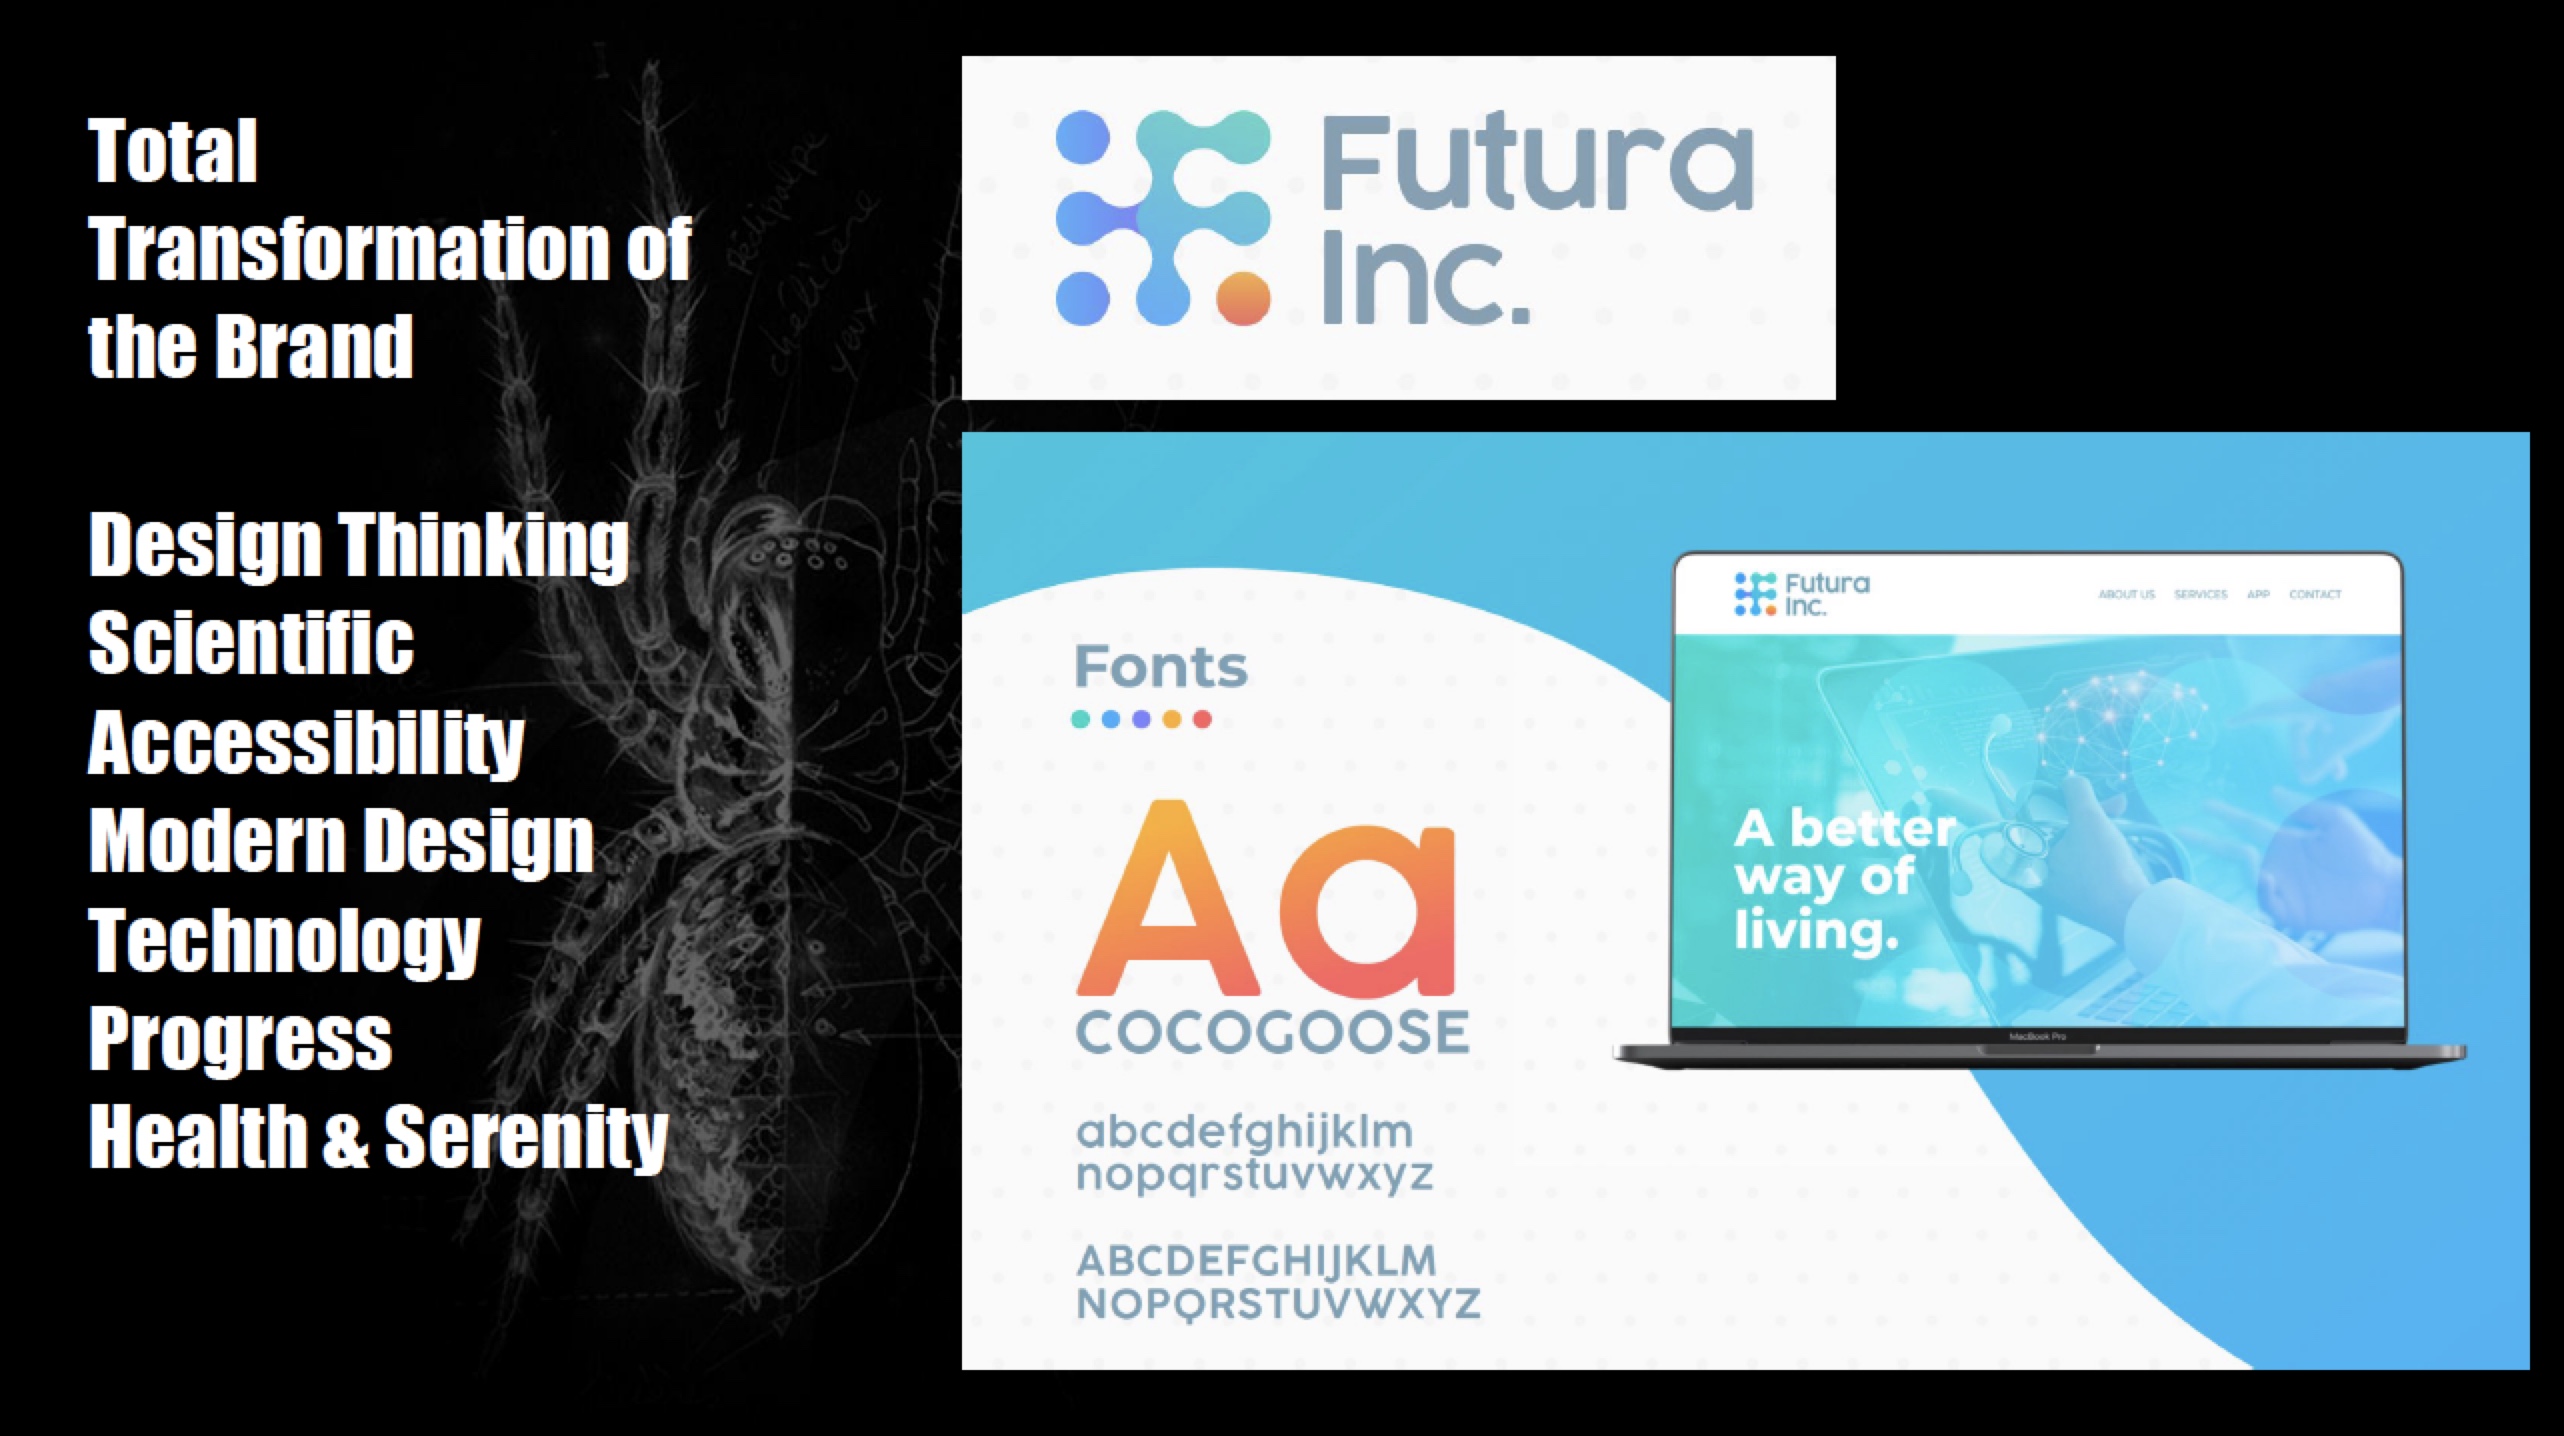 Complete Brand Transformation of Futura Health to Futura Inc